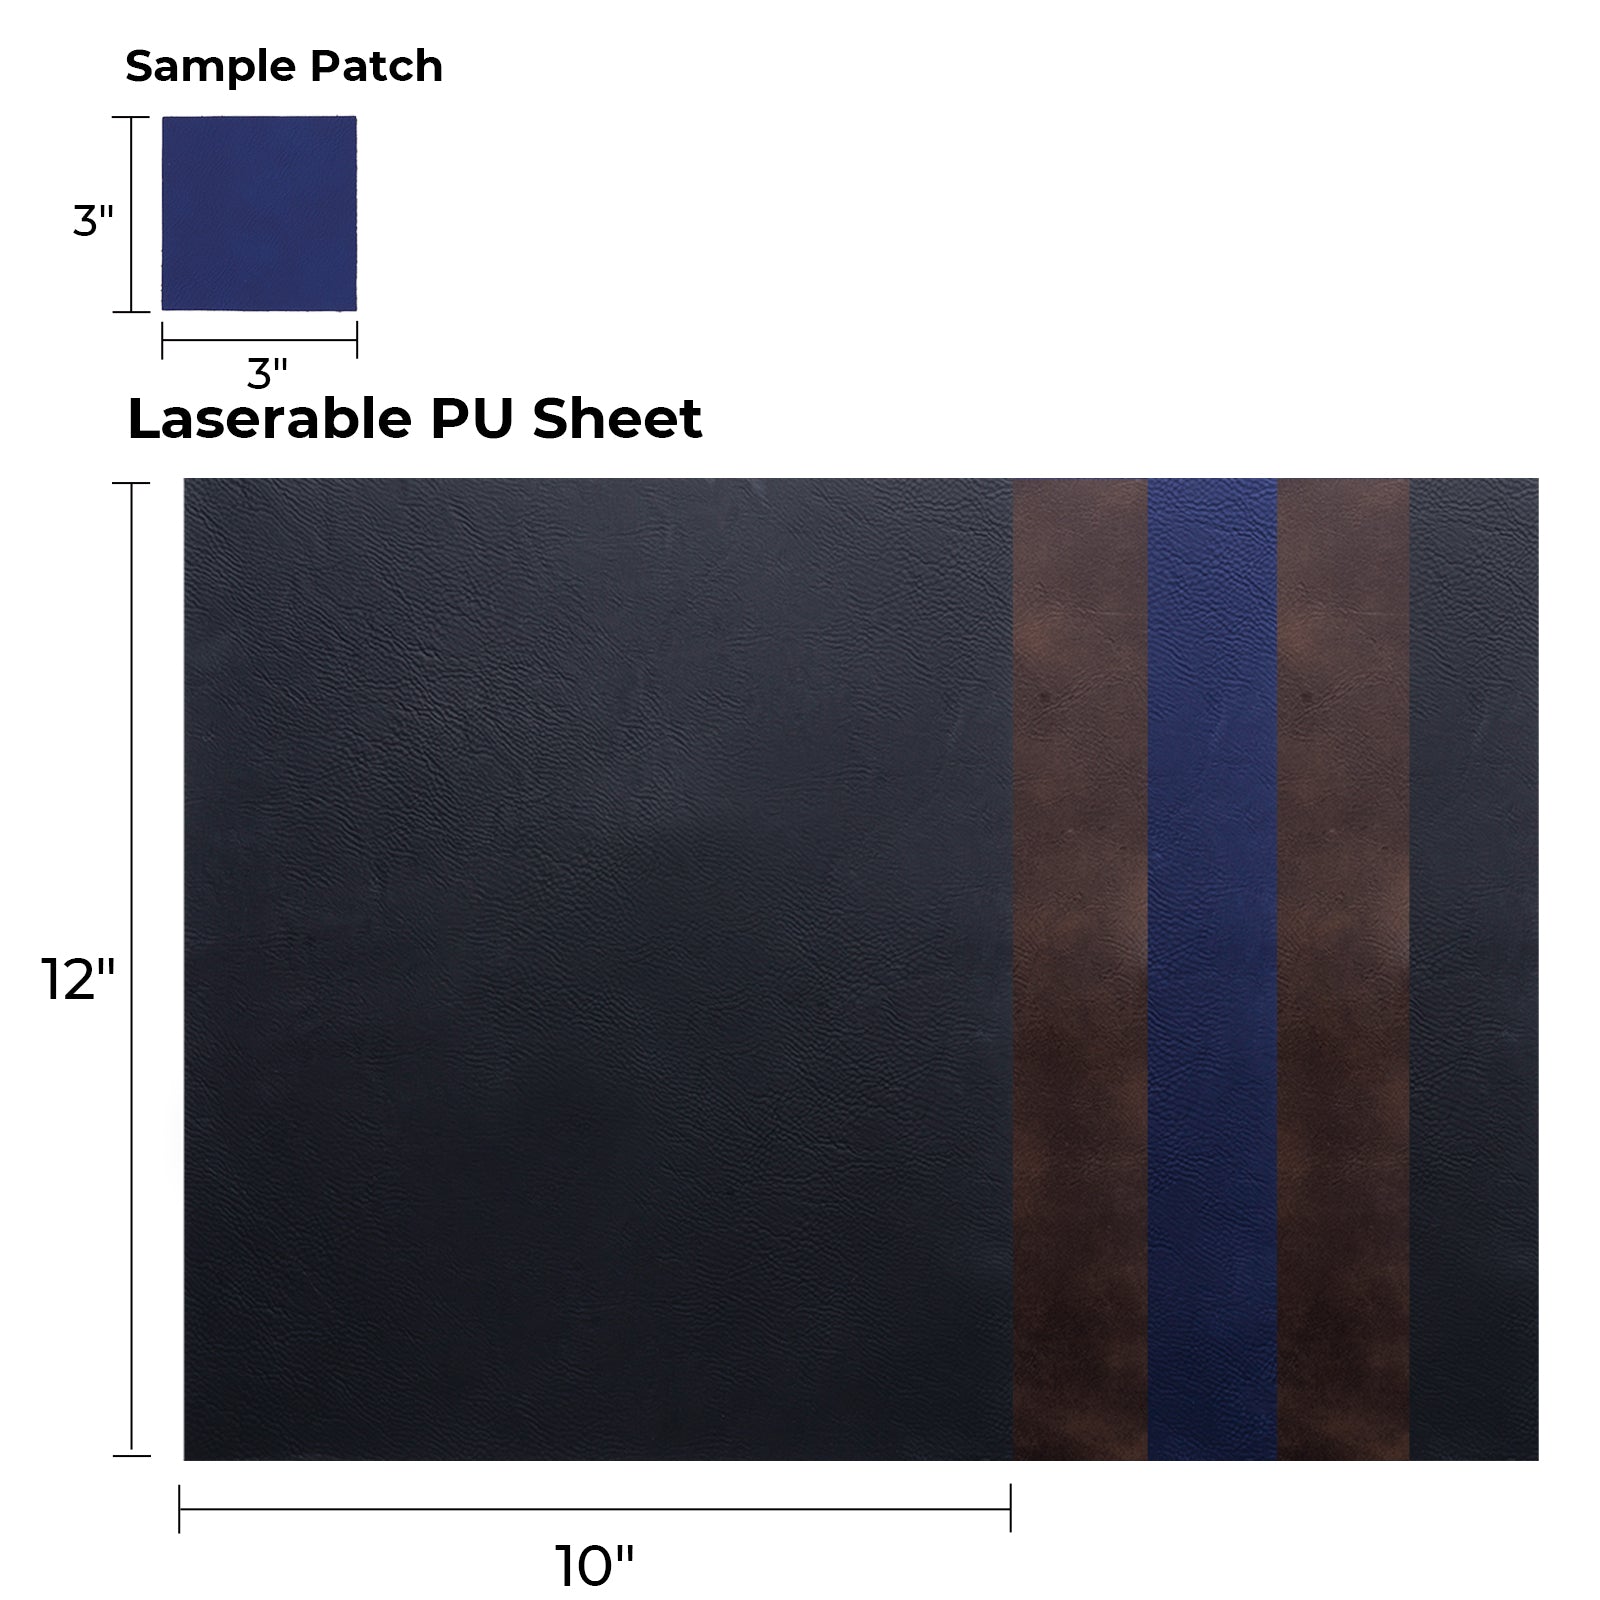 Laserable PU Patch Sheet (5pcs)